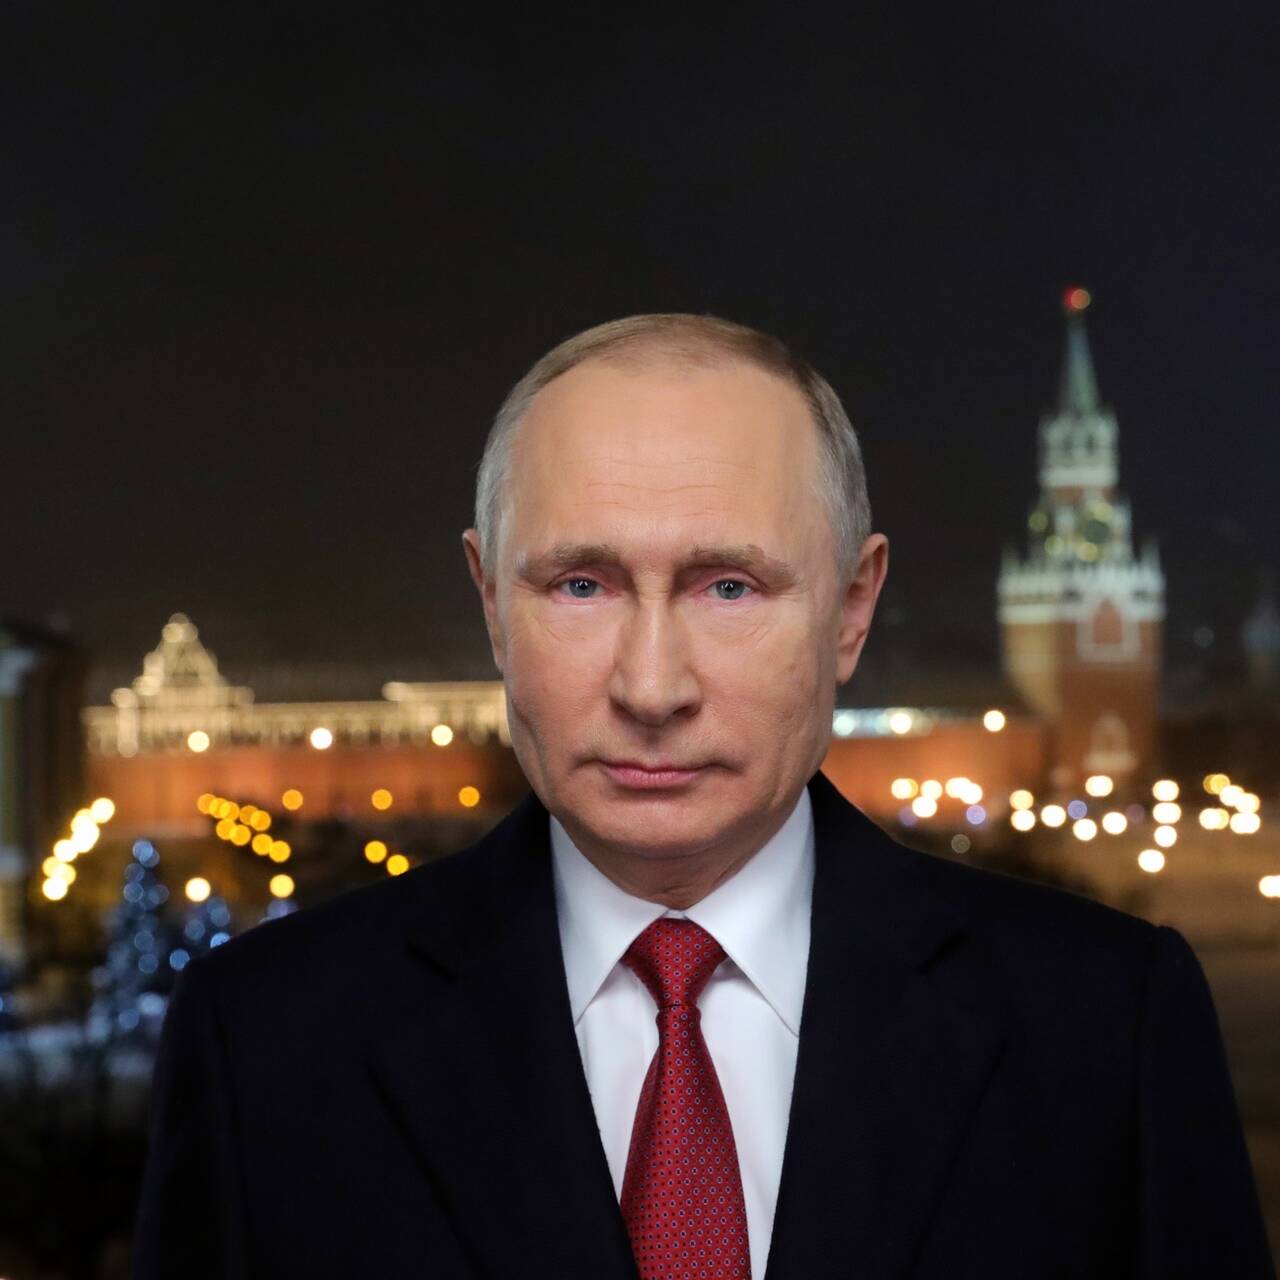 Новогоднее обращение Владимира Путина 2019